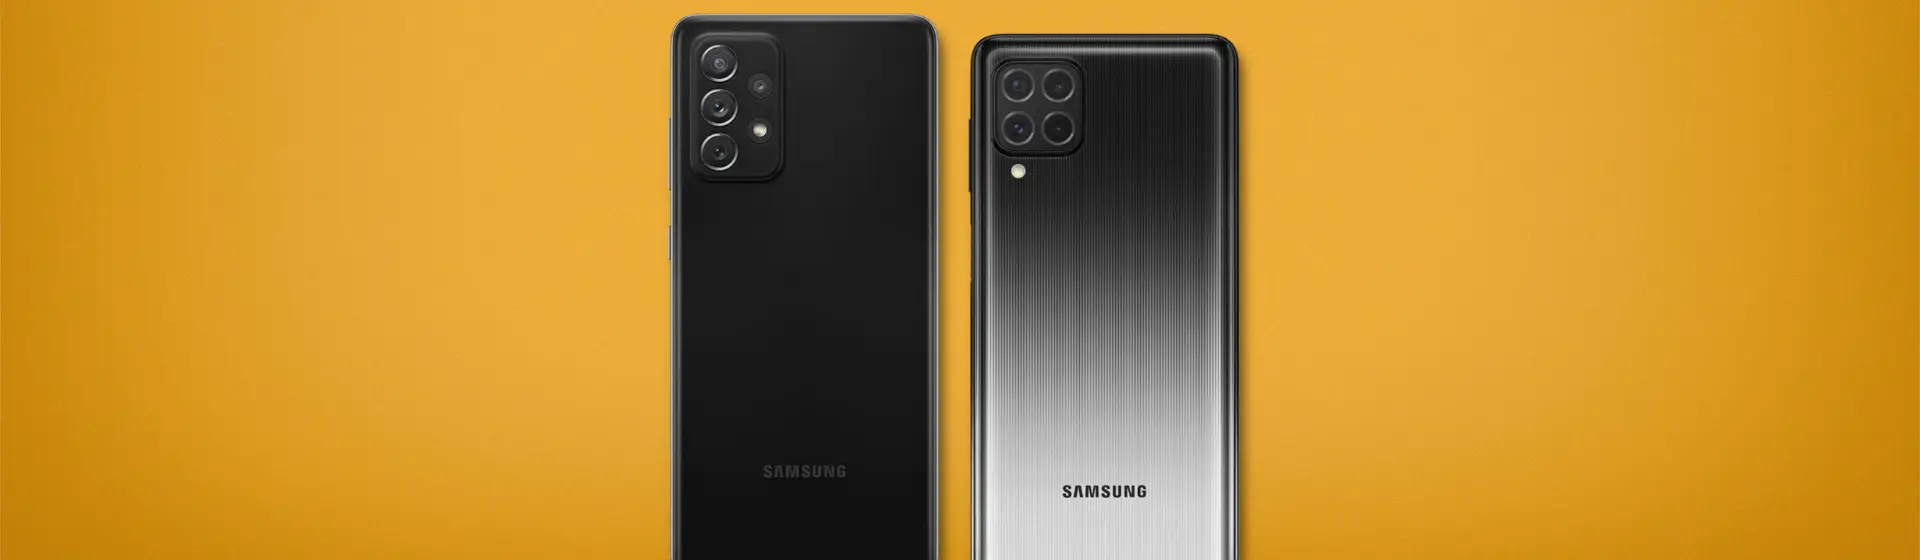 Samsung M62 vs A72: qual celular vale mais a pena?